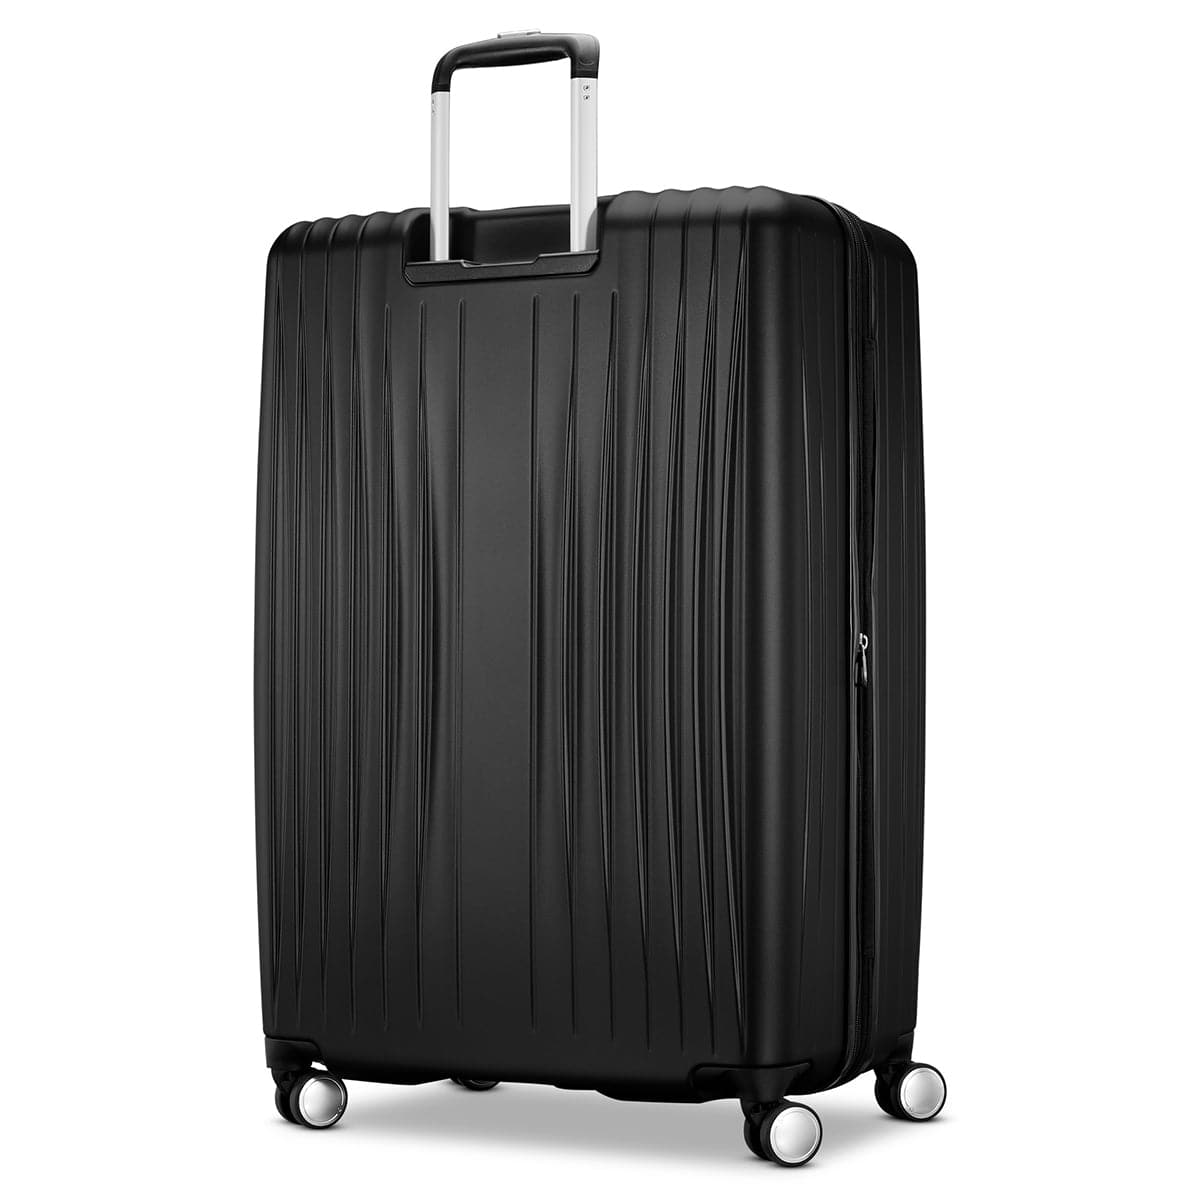 Samsonite Opto 3 3 Piece Luggage Set